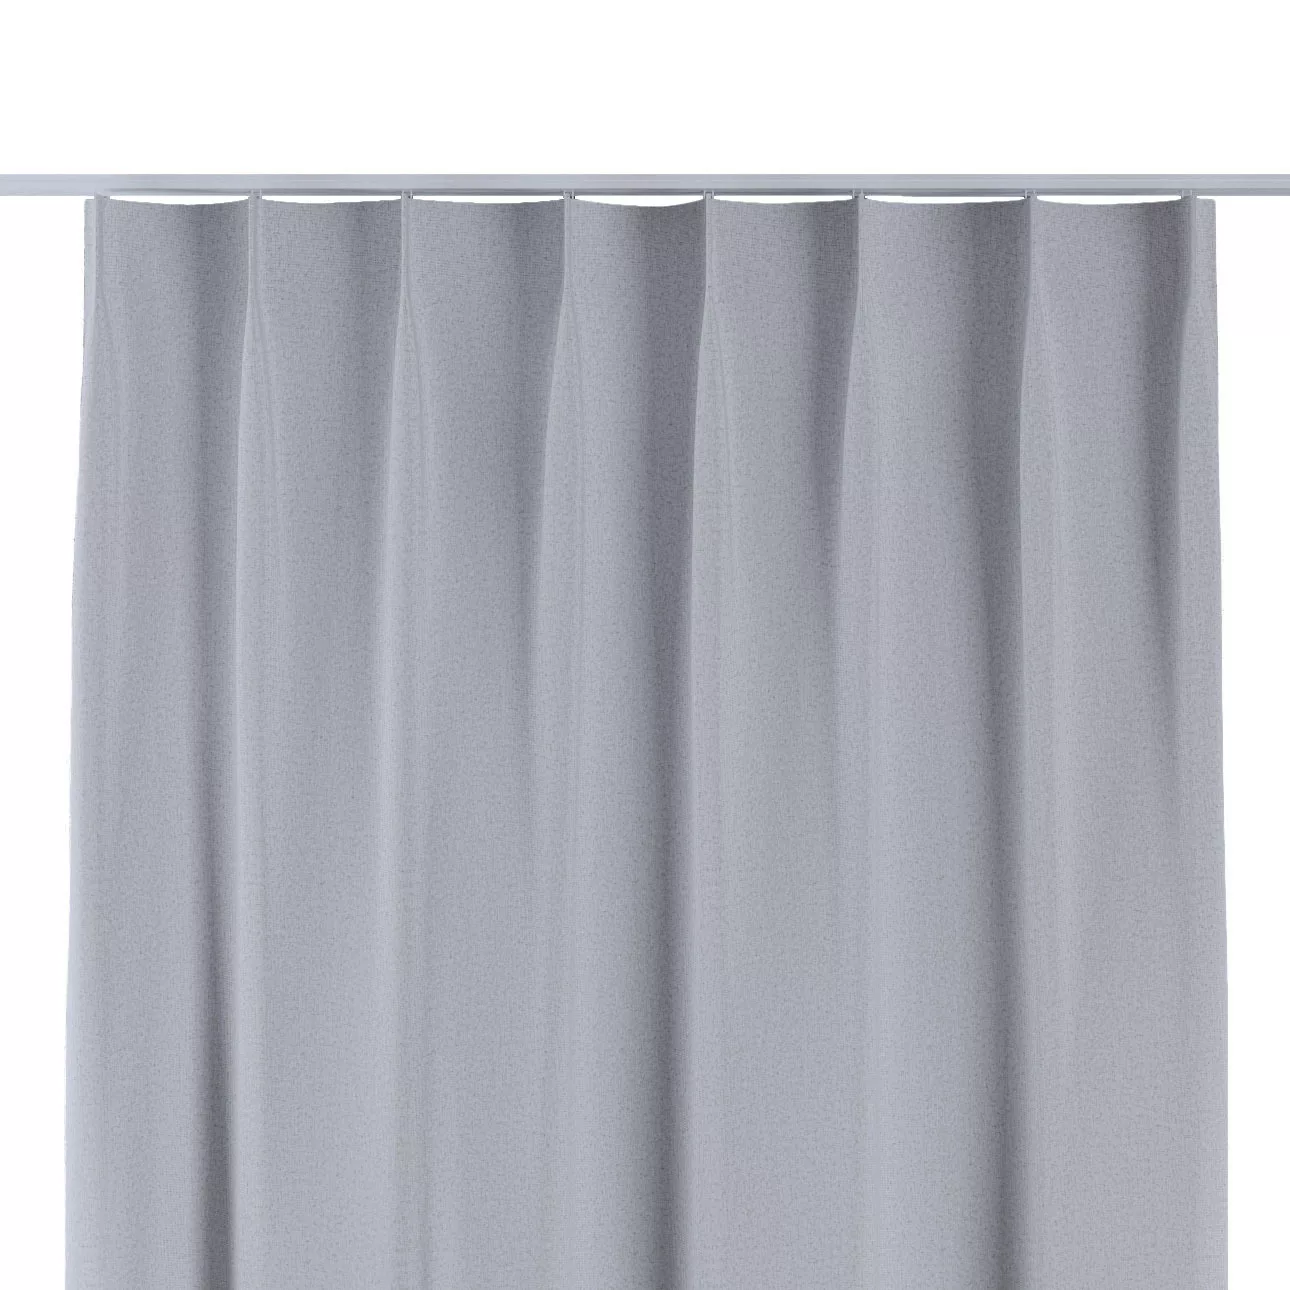 Vorhang mit flämischen 1-er Falten, hellgrau, Blackout Soft (269-20) günstig online kaufen